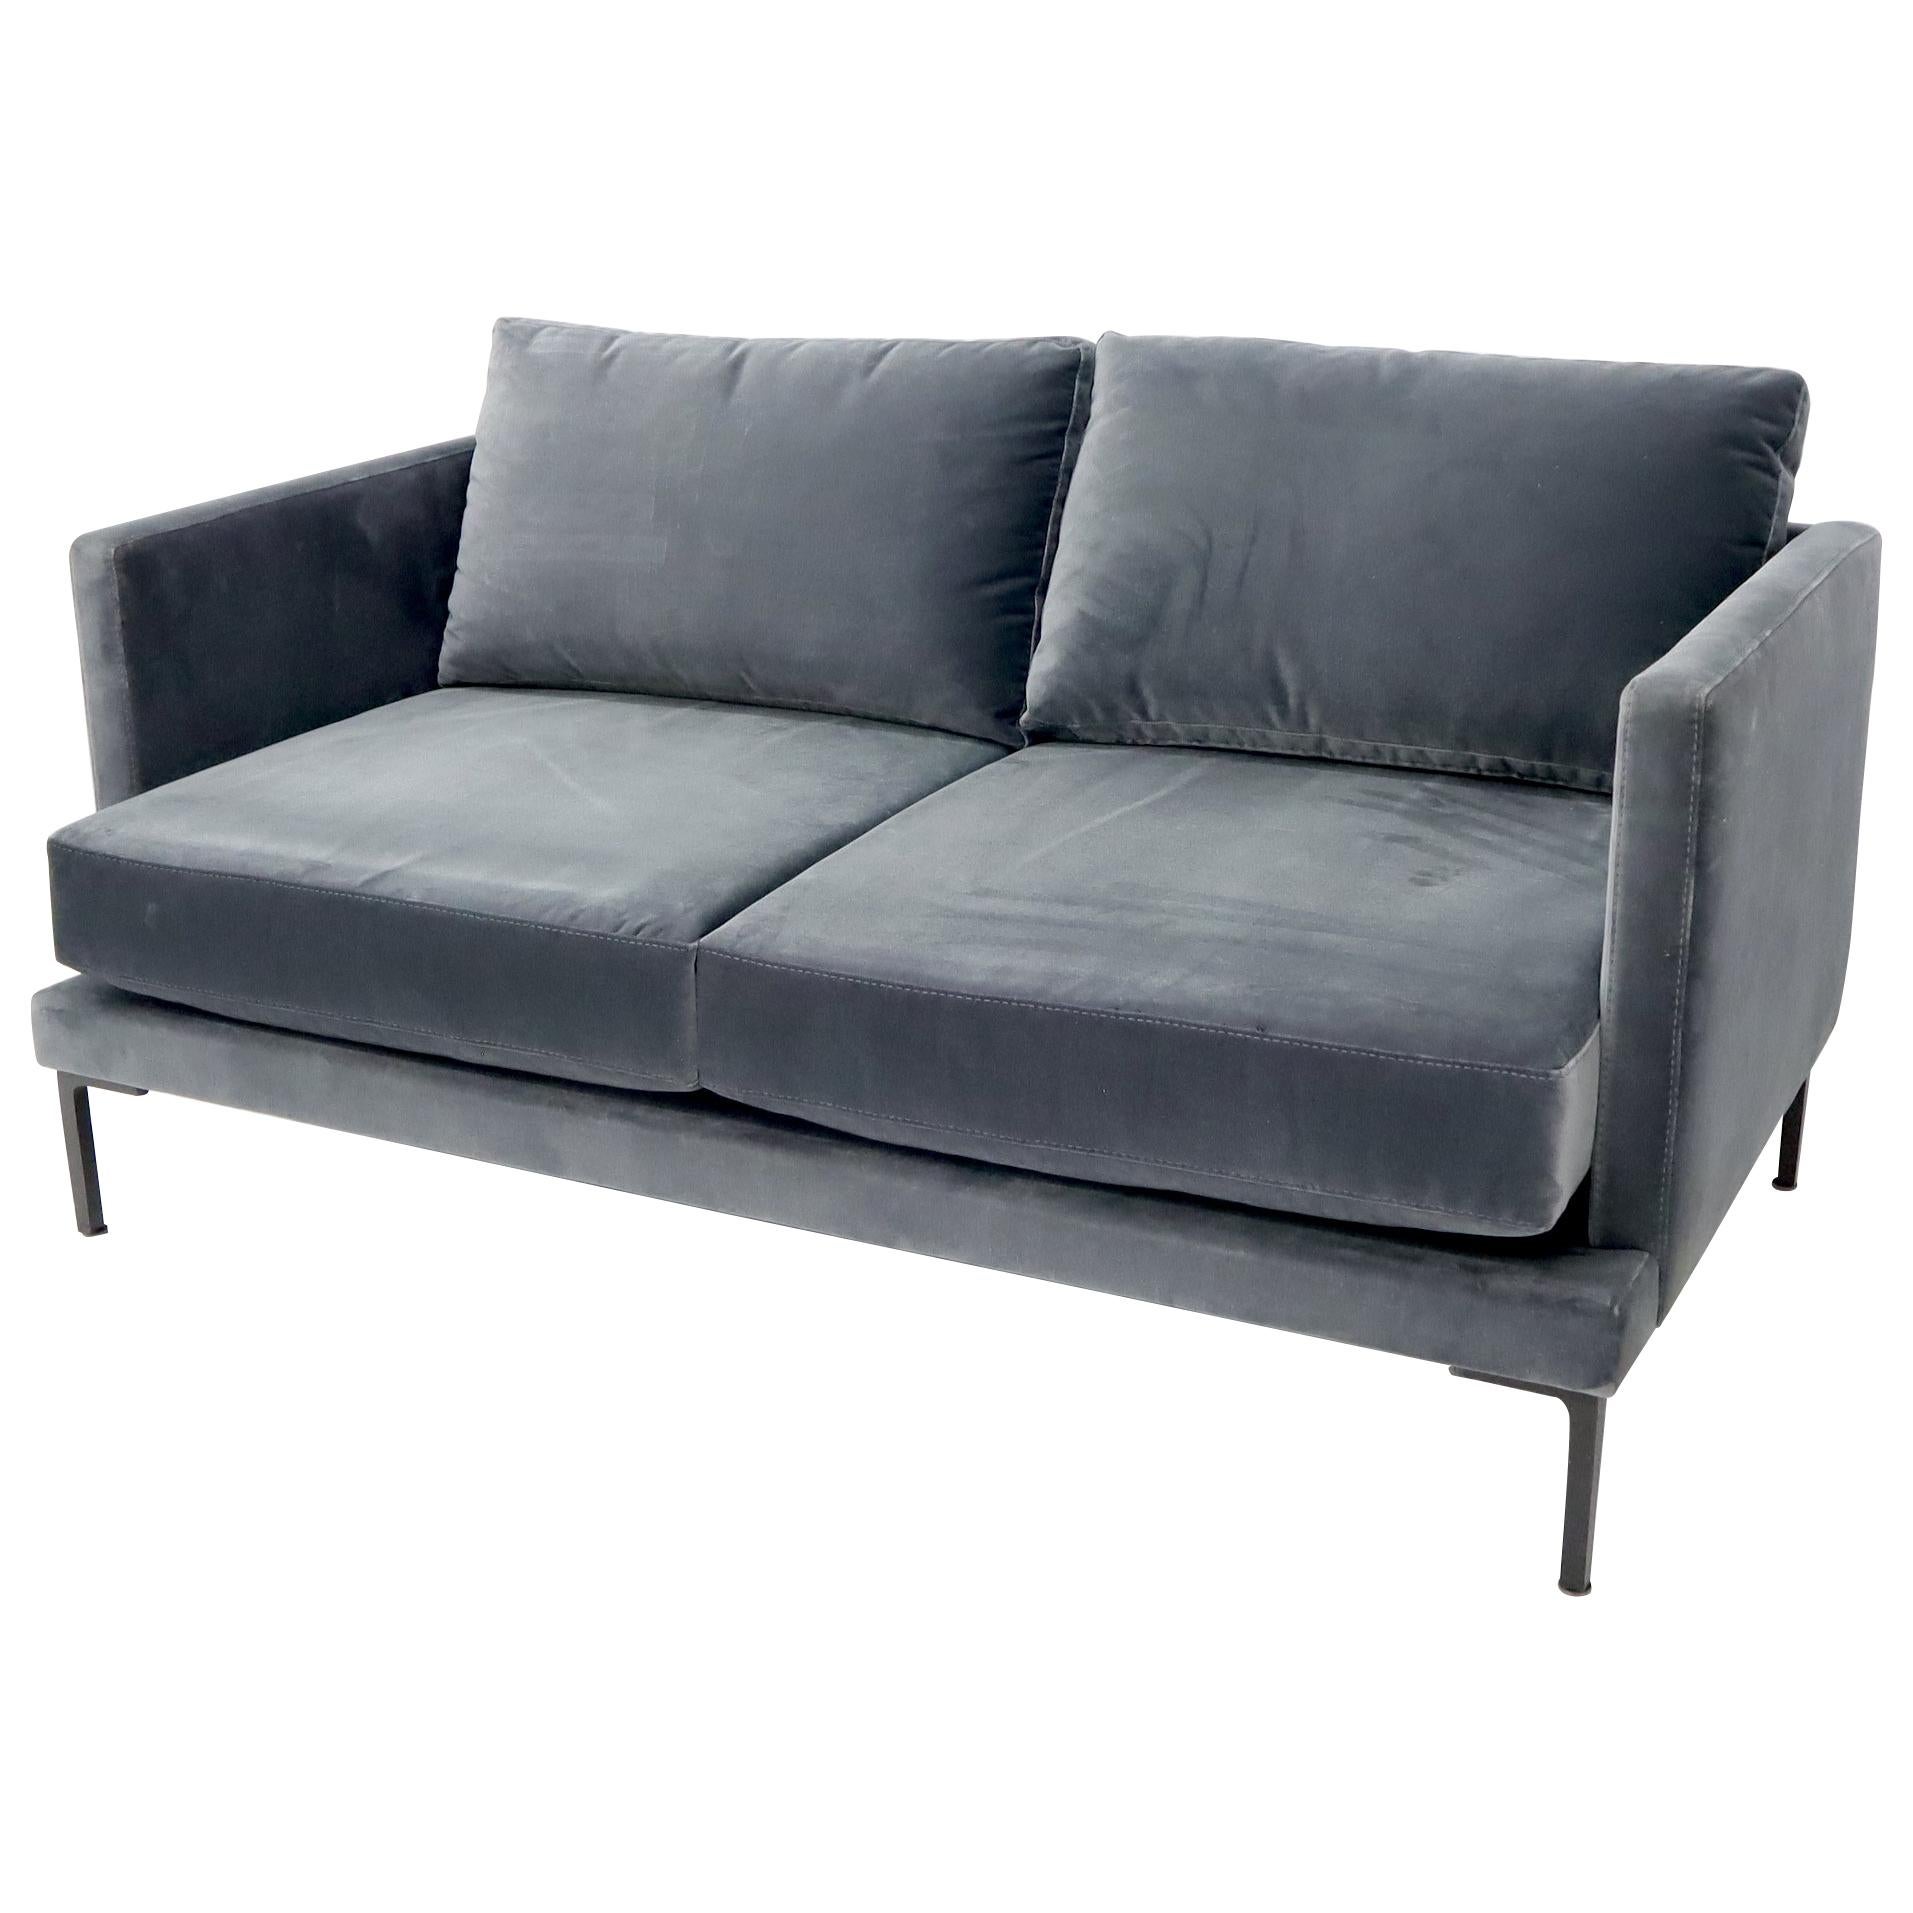 Grey Velvet Upholstery Small Sofa Loveseat